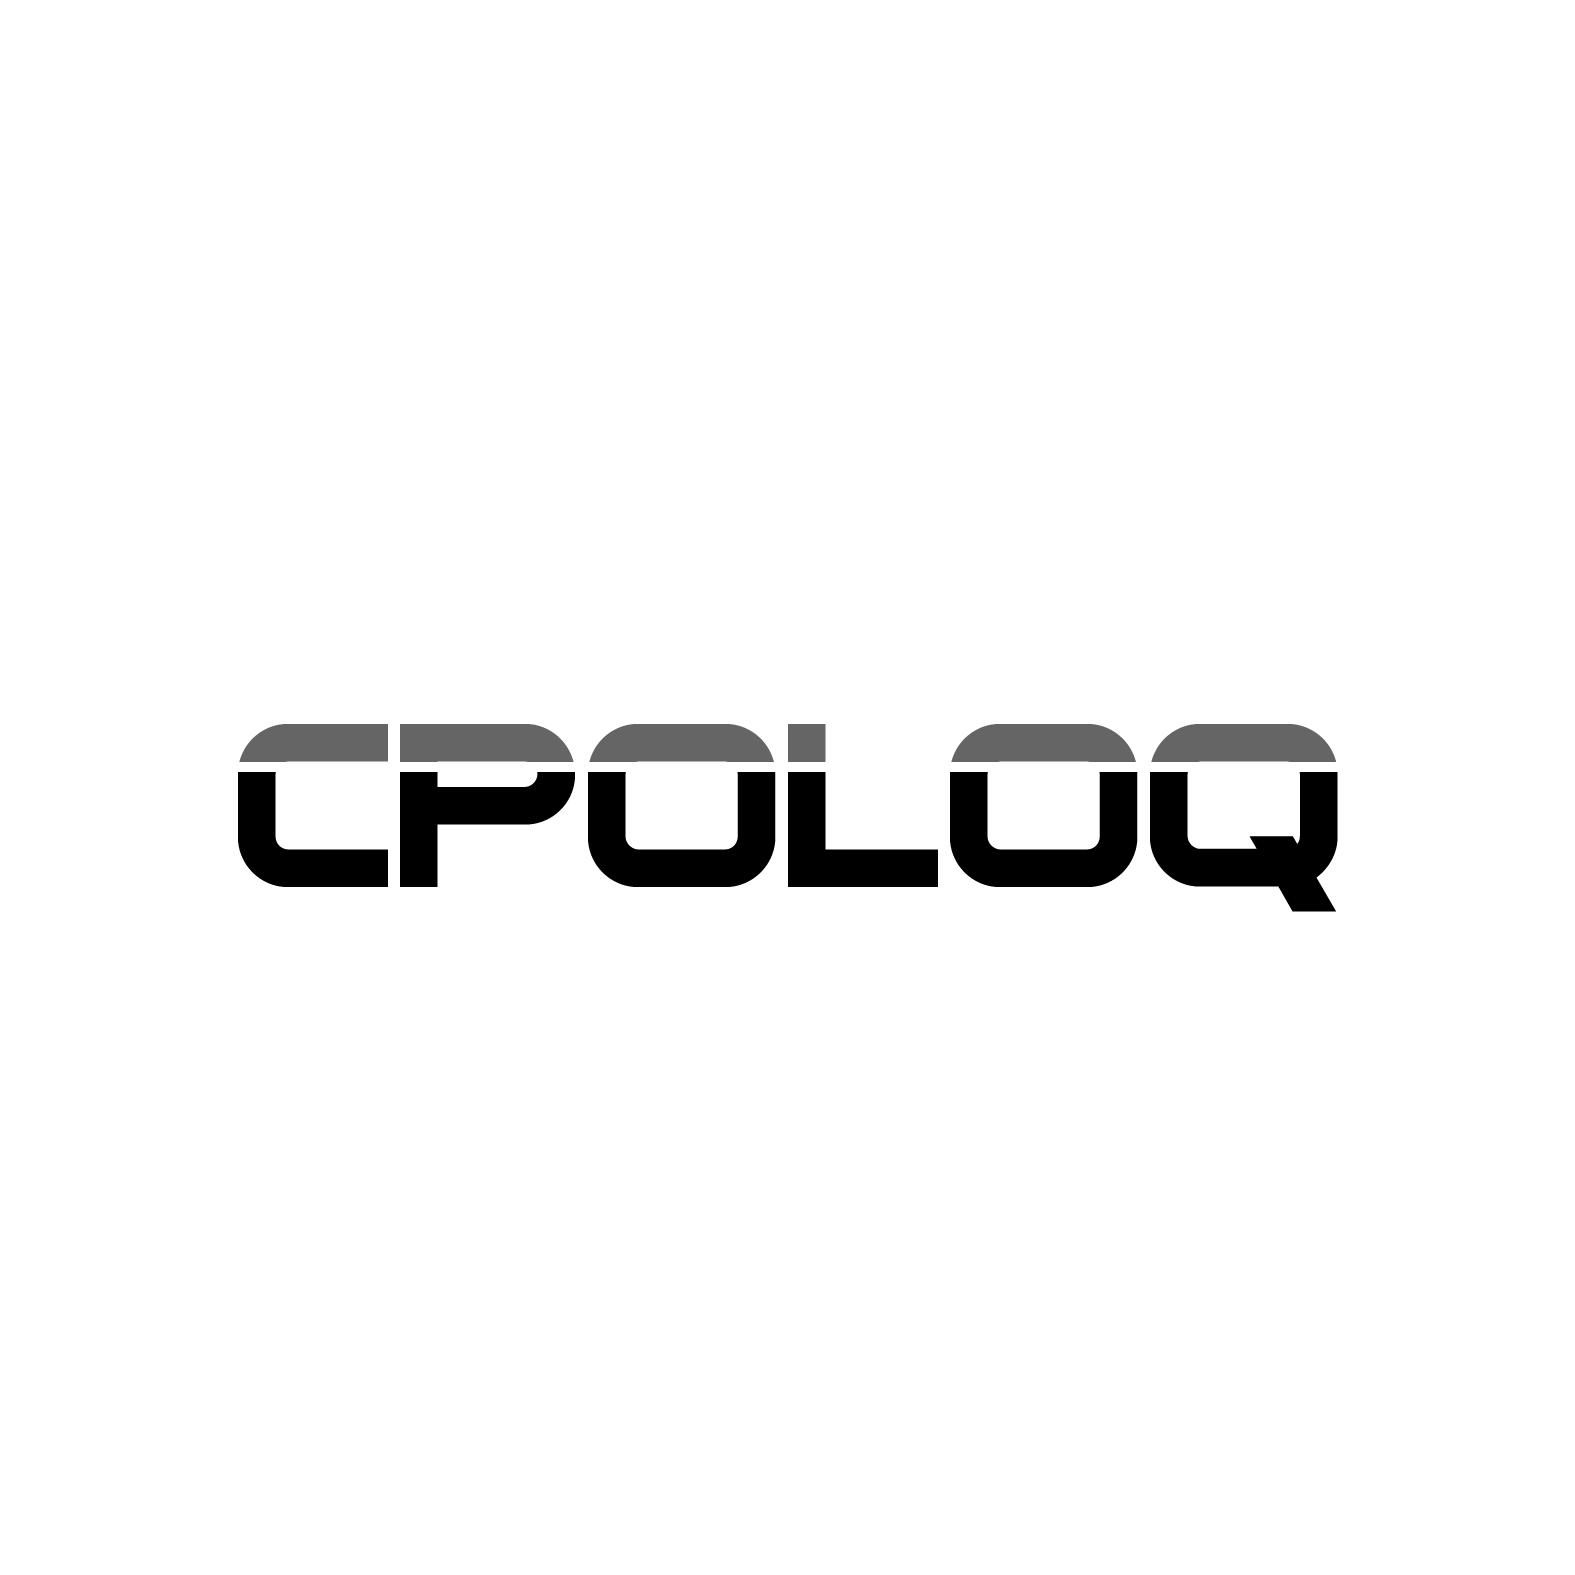 转让商标-CPOLOQ